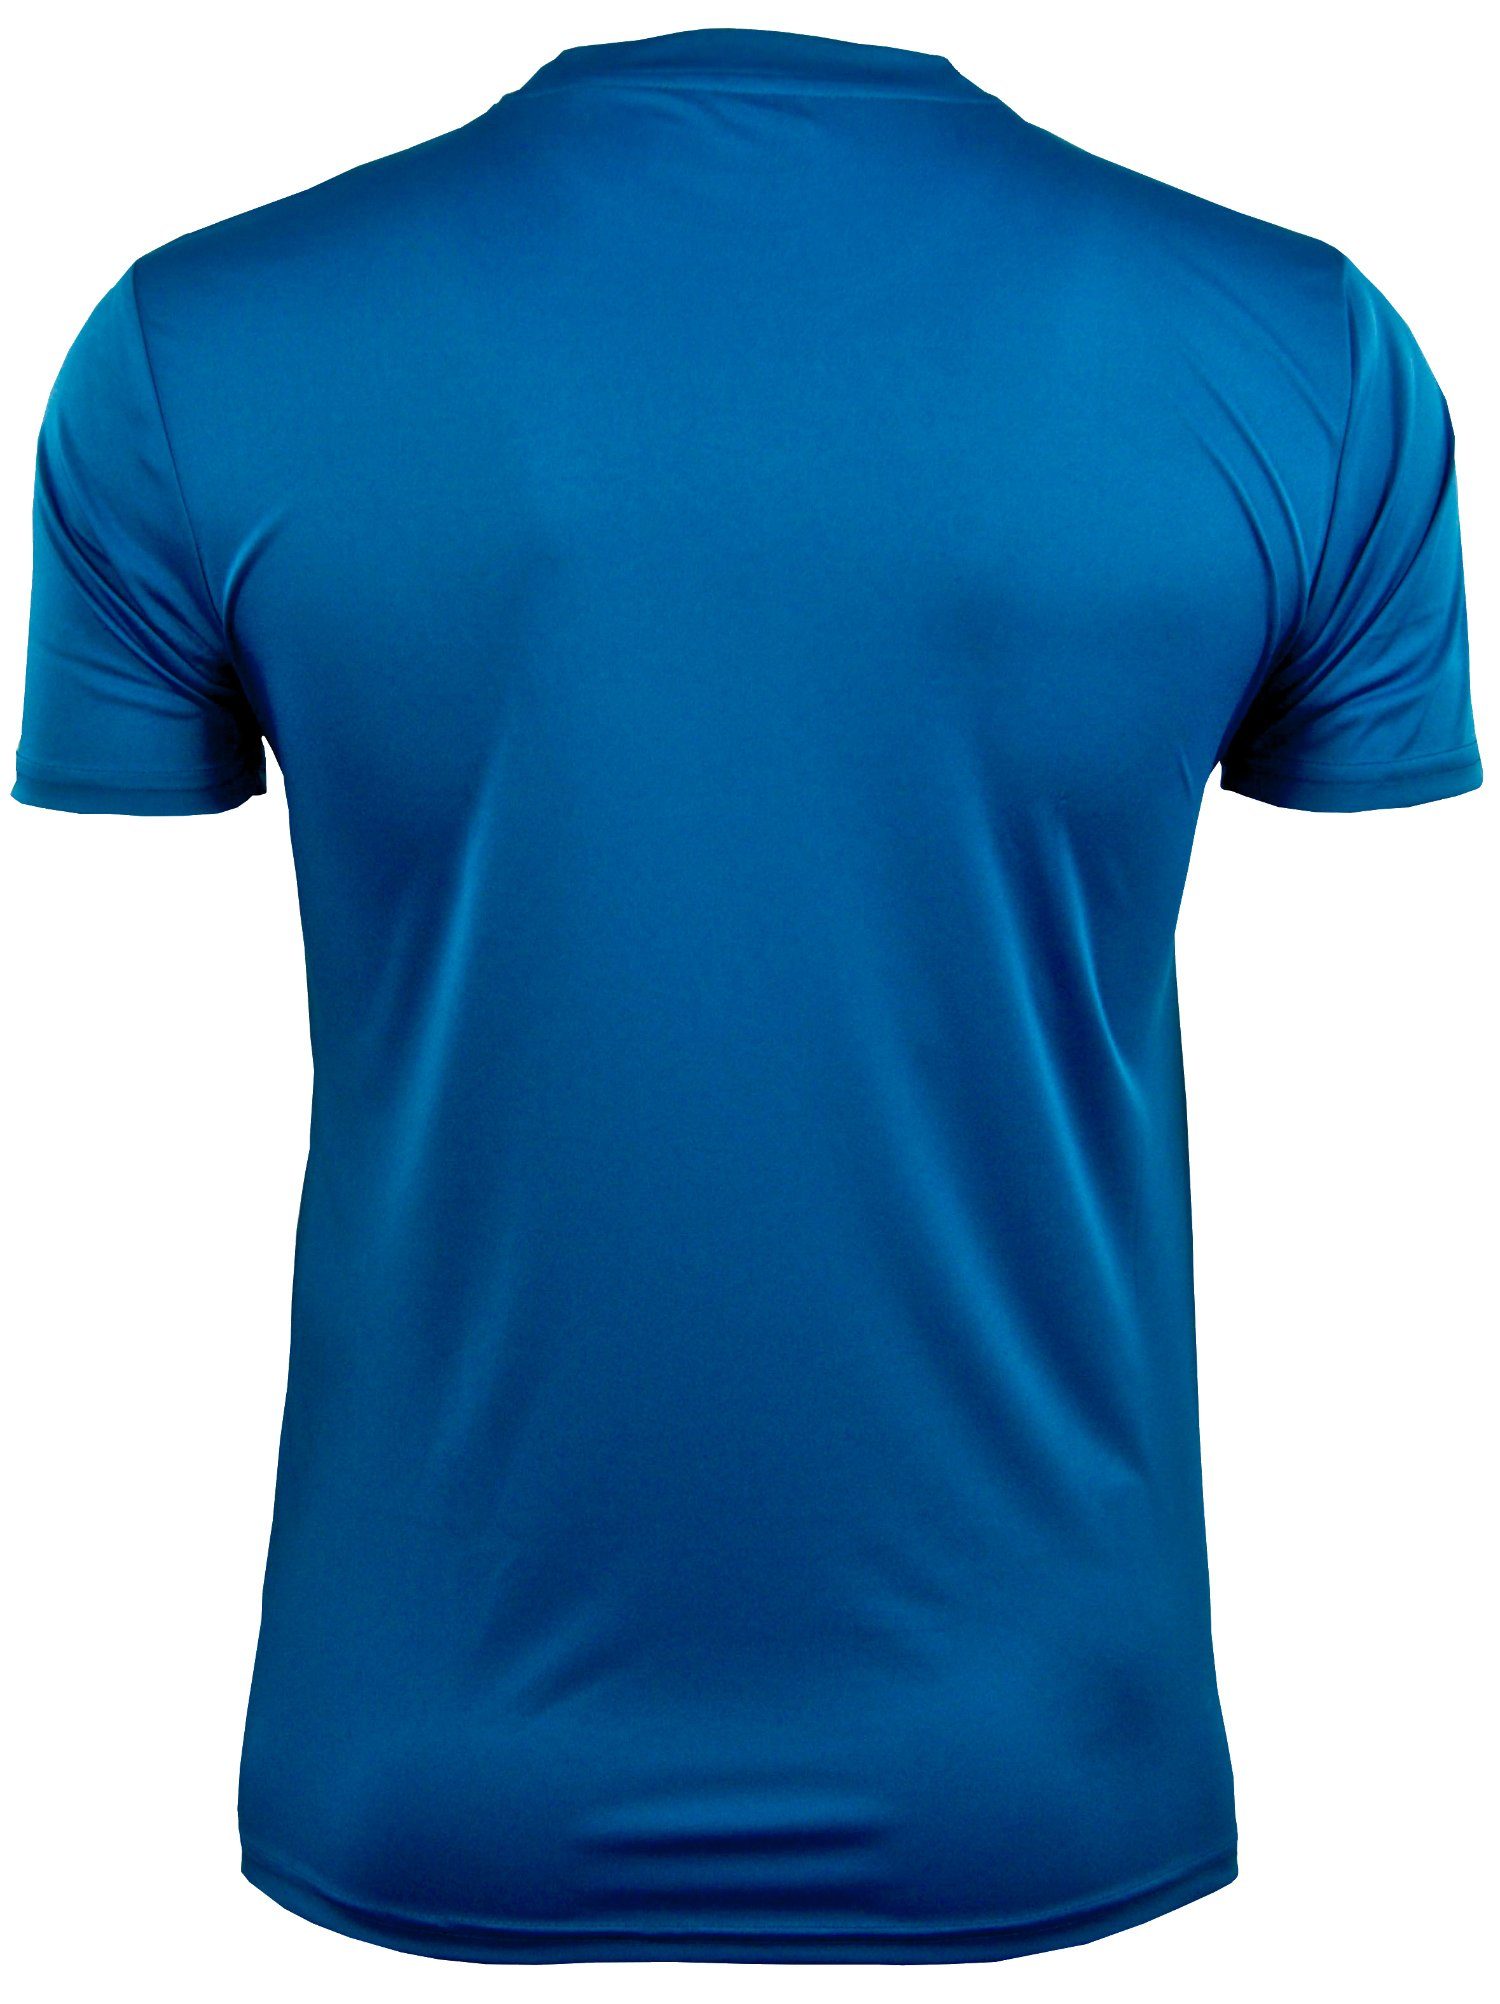 Unifarben, T-Shirt Blau-OHNE-Logo Funktionsshirt Sportshirt Herren Kurzarm in Mountain Logo Funktionsshirt FW04 GUGGEN